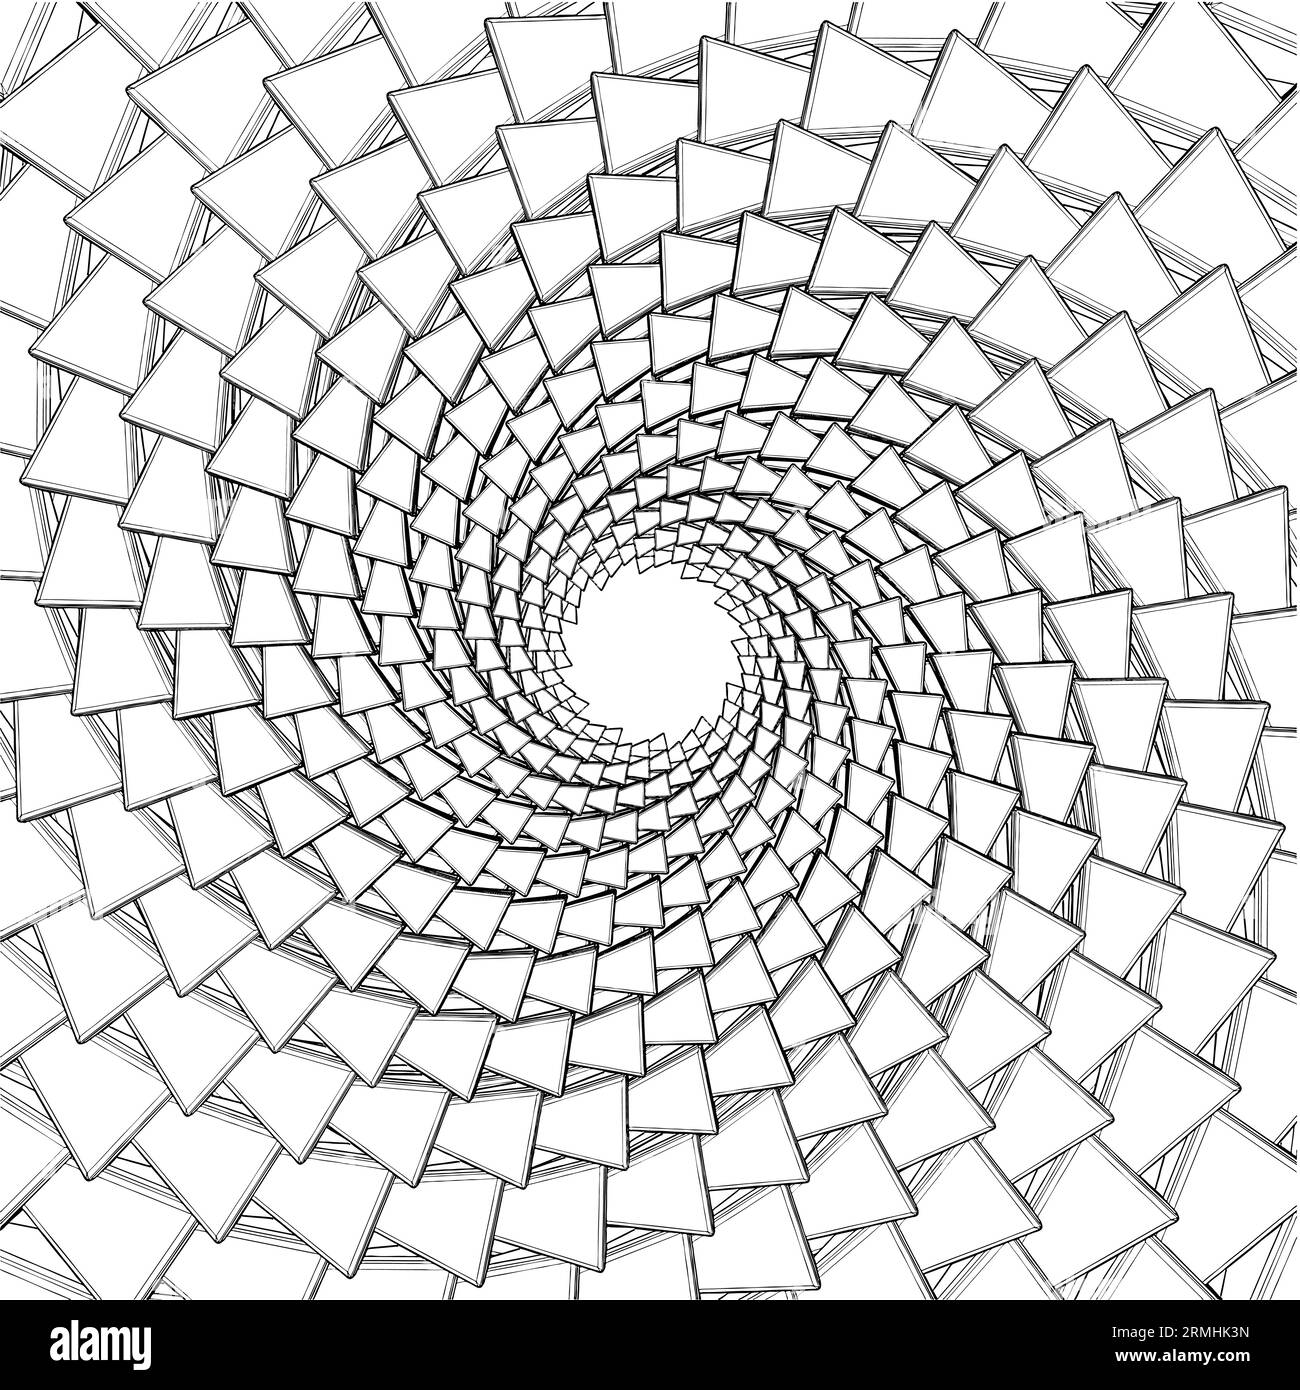 Swirl Galaxy Tiles Vektor. Isoliert auf weißem Hintergrund. Eine Vektordarstellung Einer Wirbelkachel. Stock Vektor